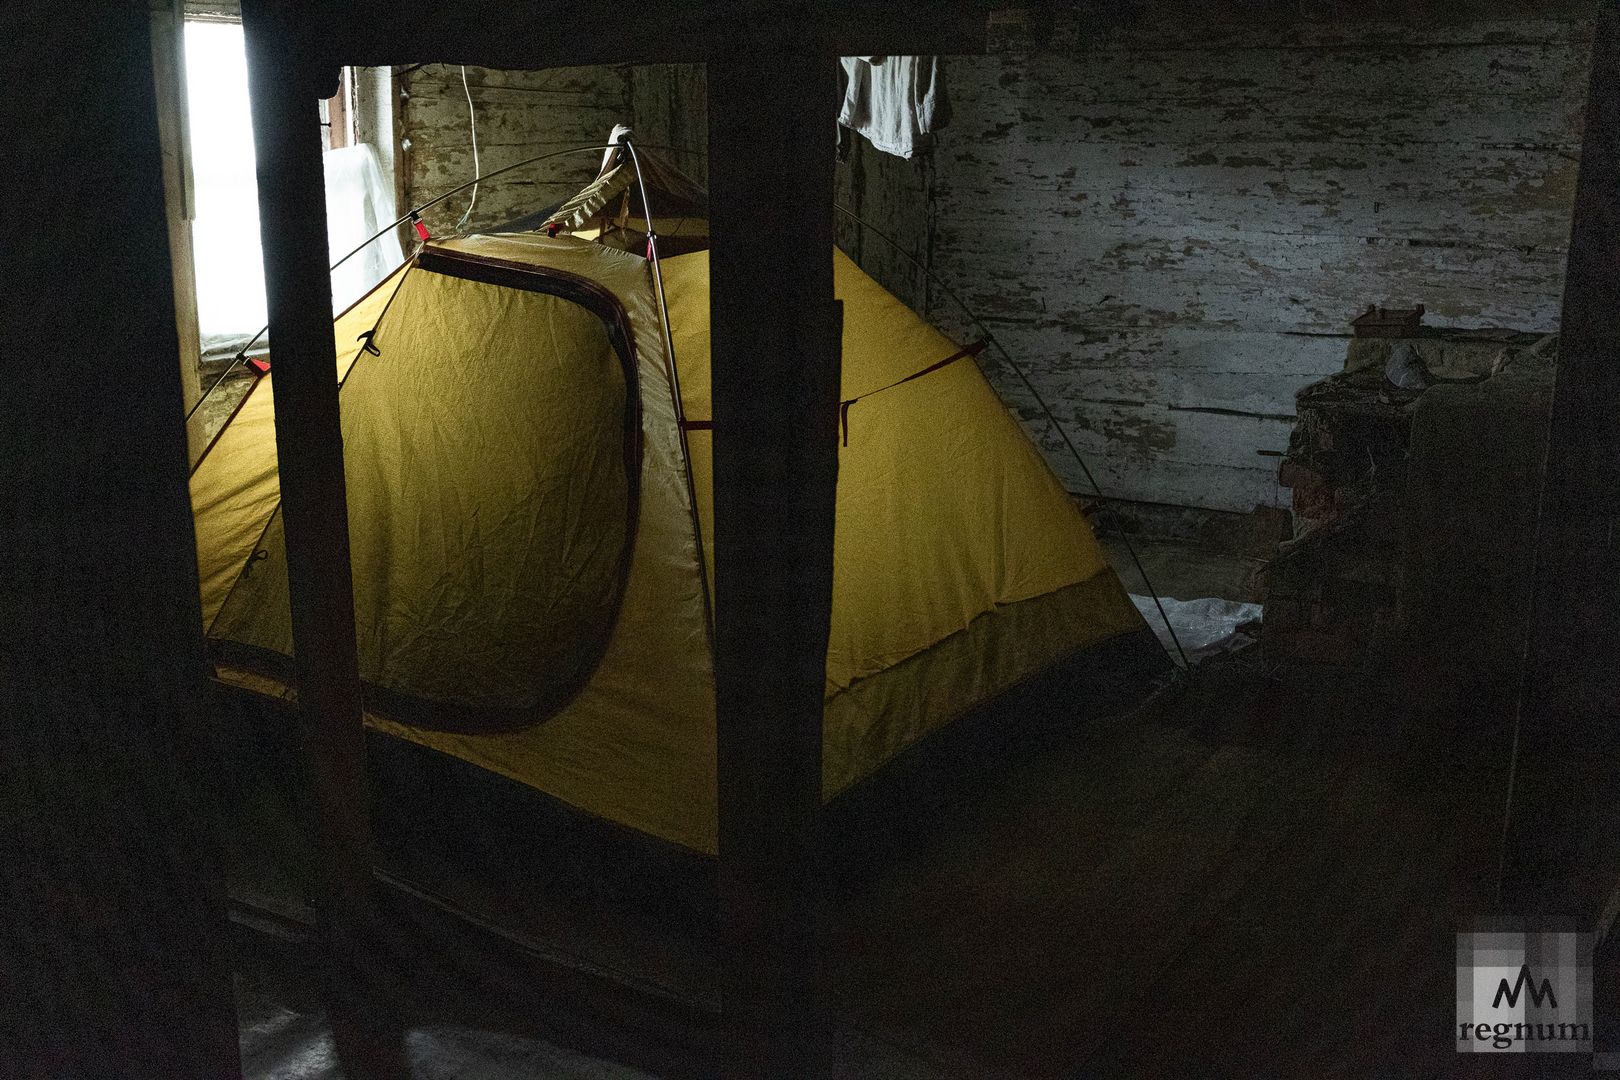 Во время урагана на острове вся группа спала в палатках на втором этаже часовни, чтобы их не унесло ветром.